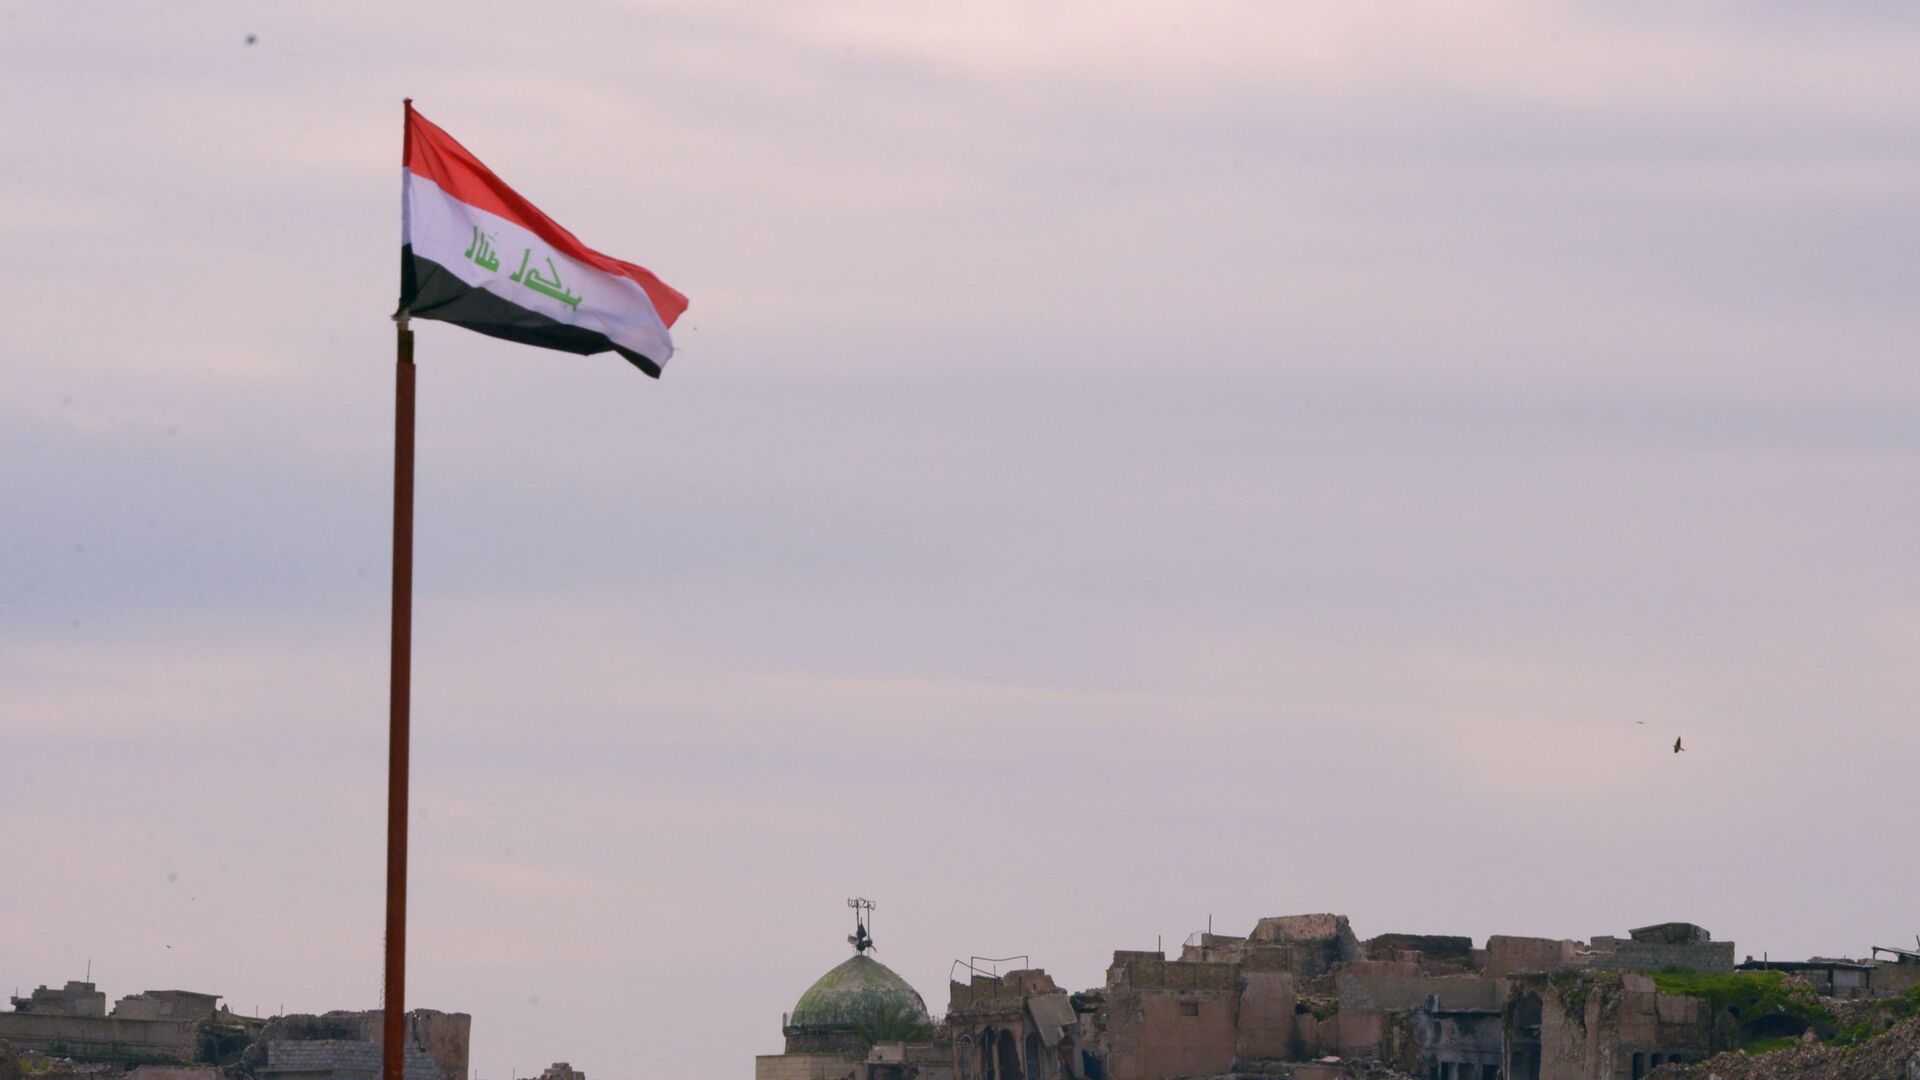 Lá cờ Iraq đại diện cho quốc gia này với lịch sử đa dạng và văn hóa phong phú. Hiện tại, Iraq đang phát triển mạnh mẽ và trở nên mở rộng hơn bao giờ hết. Lá cờ này còn thể hiện lòng tự hào và tình yêu đất nước của người dân nơi đây, cùng với sự đoàn kết và sức mạnh của tất cả. Hãy cùng khám phá và tìm hiểu hơn về đất nước này thông qua hình ảnh liên quan đến lá cờ Iraq nhé.